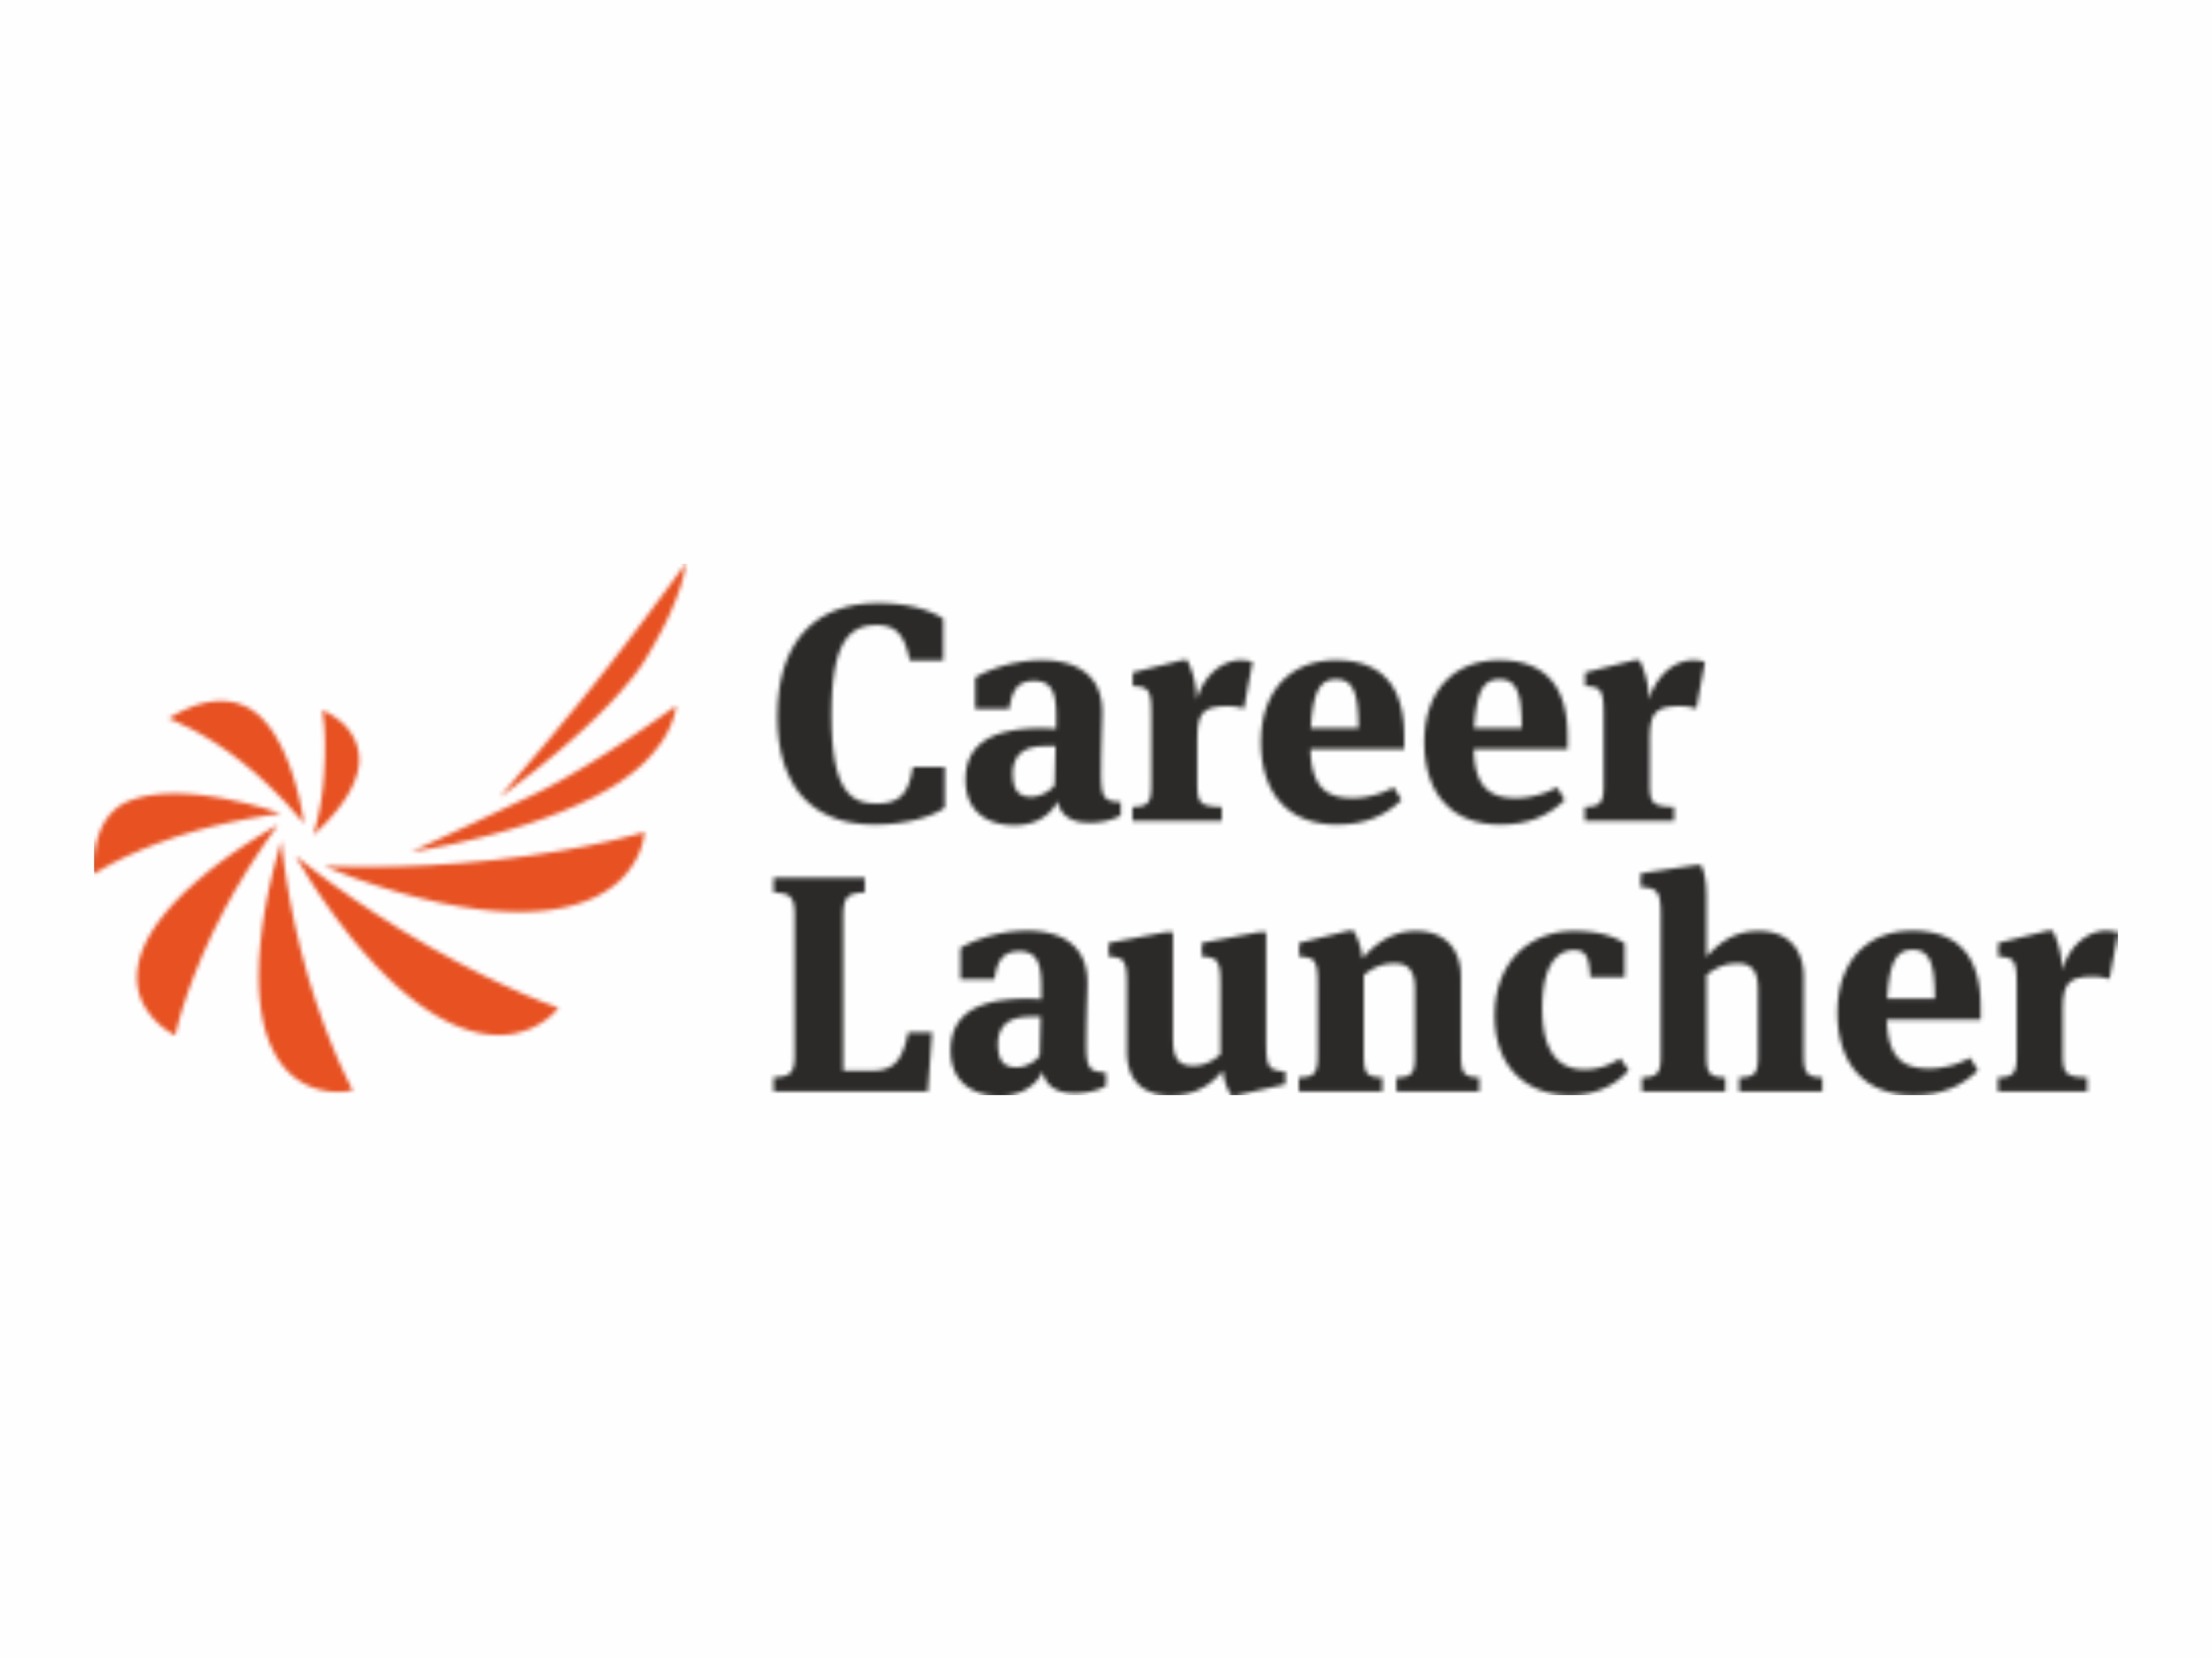 Career_Launcher